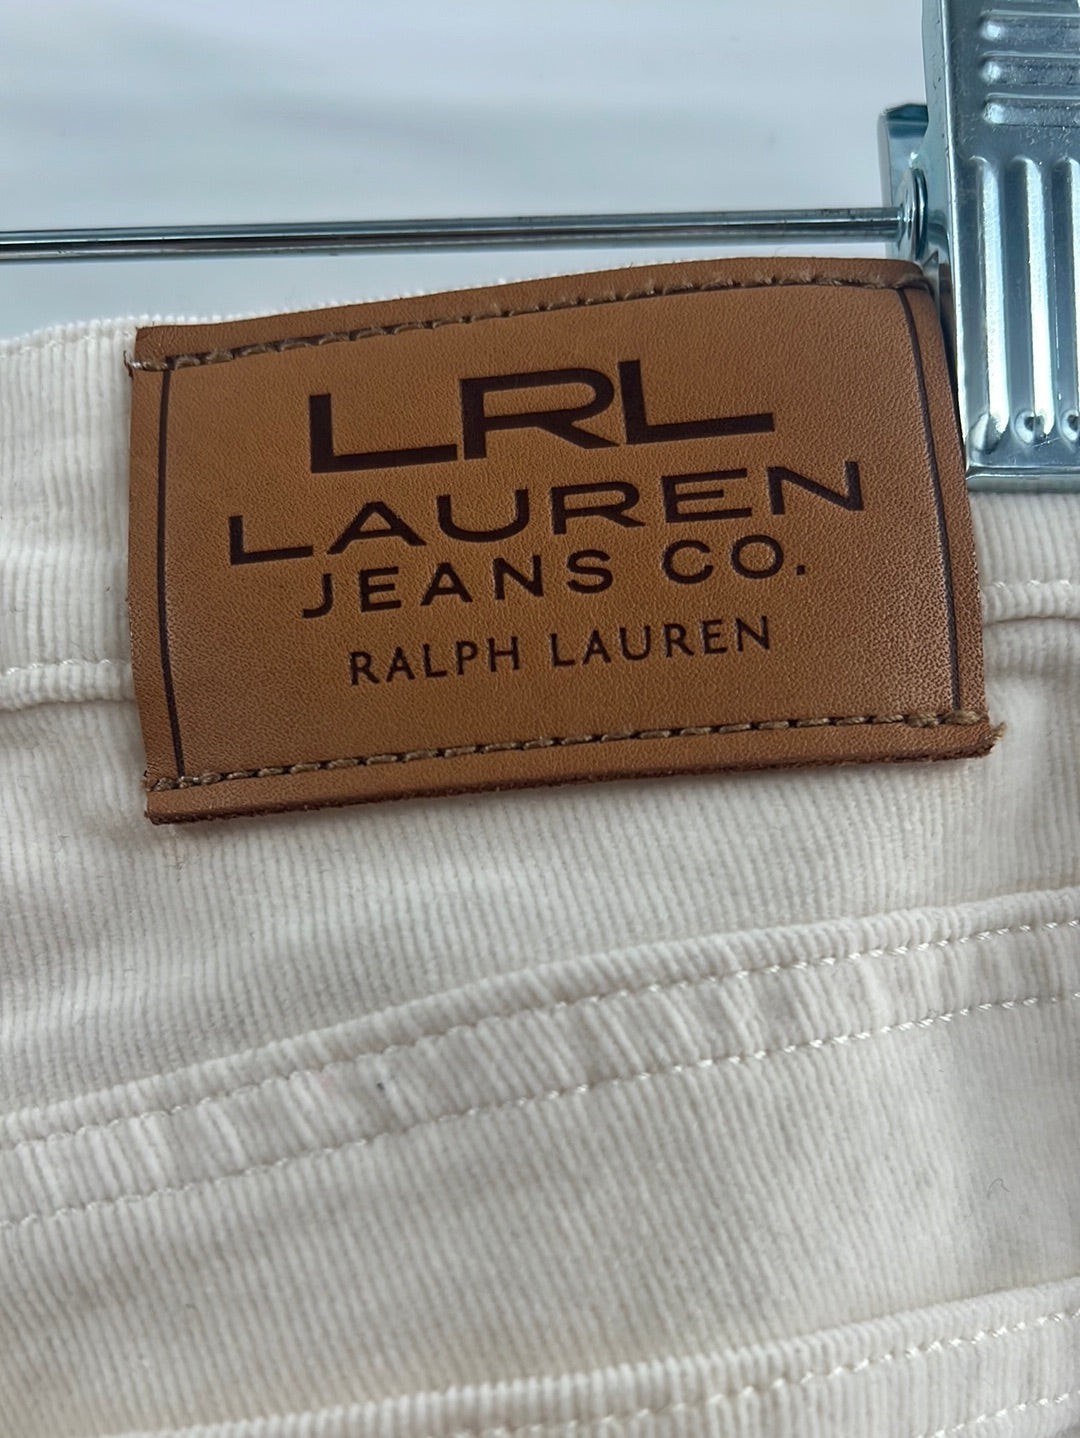 Lauren Jeans Co. Ralph Lauren Size 10